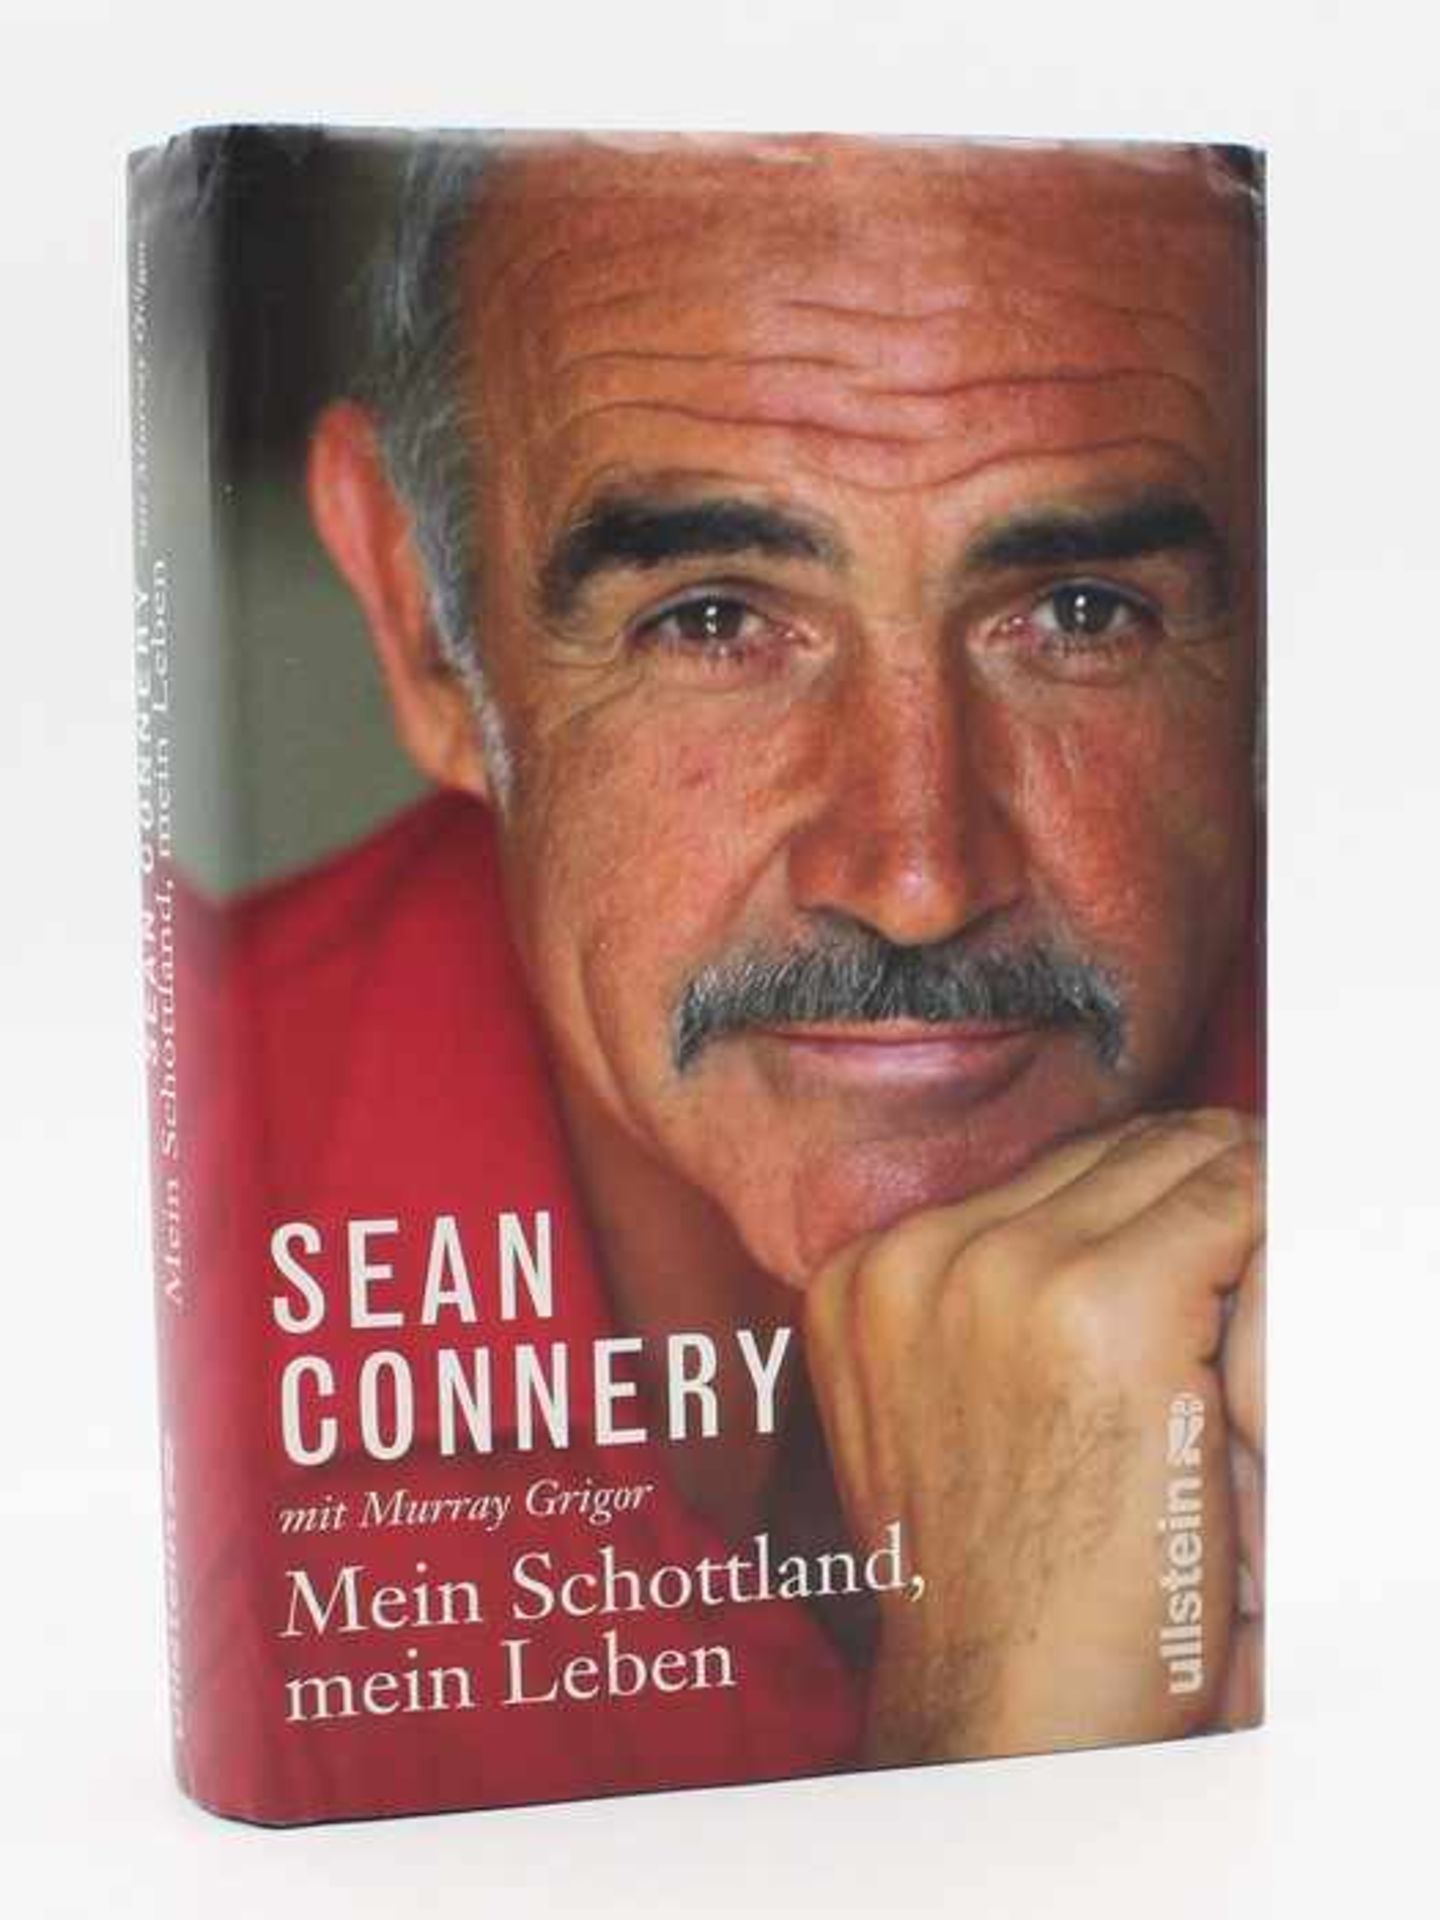 Connery, Sean"Mein Leben, mein Schottland", Berlin Ullstein Verlag 2008, 495 S., m. Widmung u.